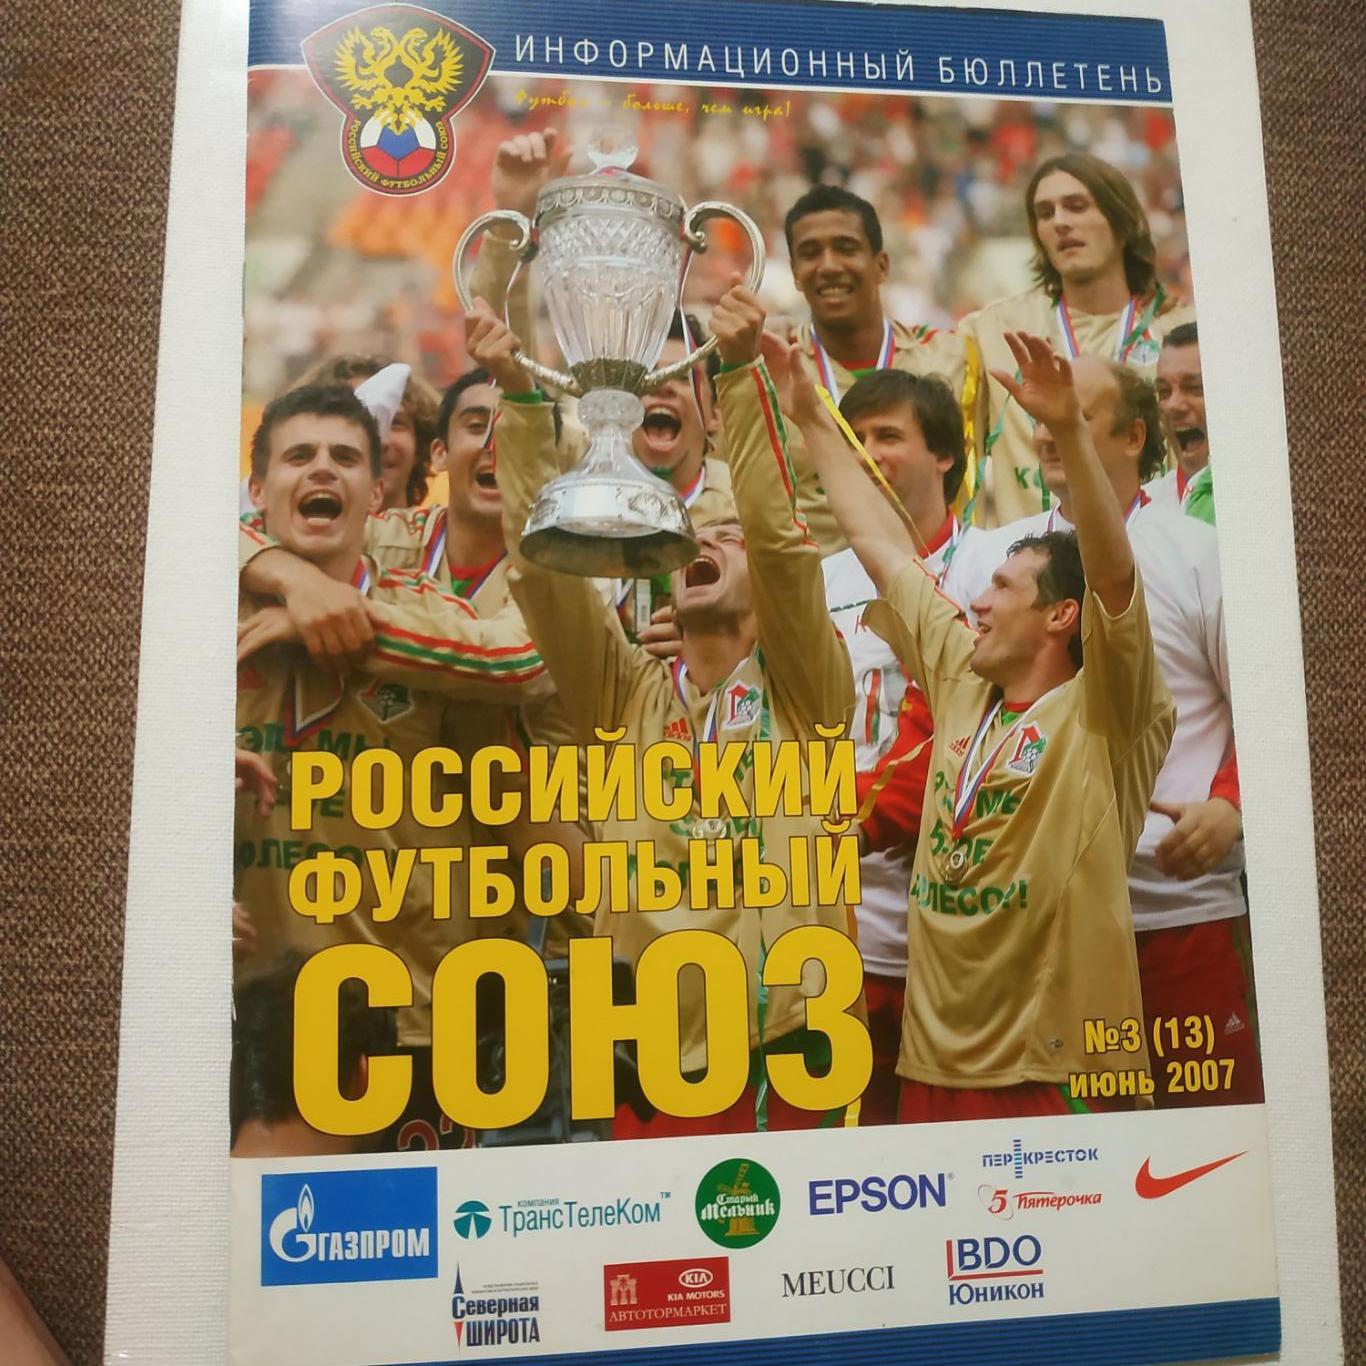 Российский футбольный союз#3(13) июнь 2007